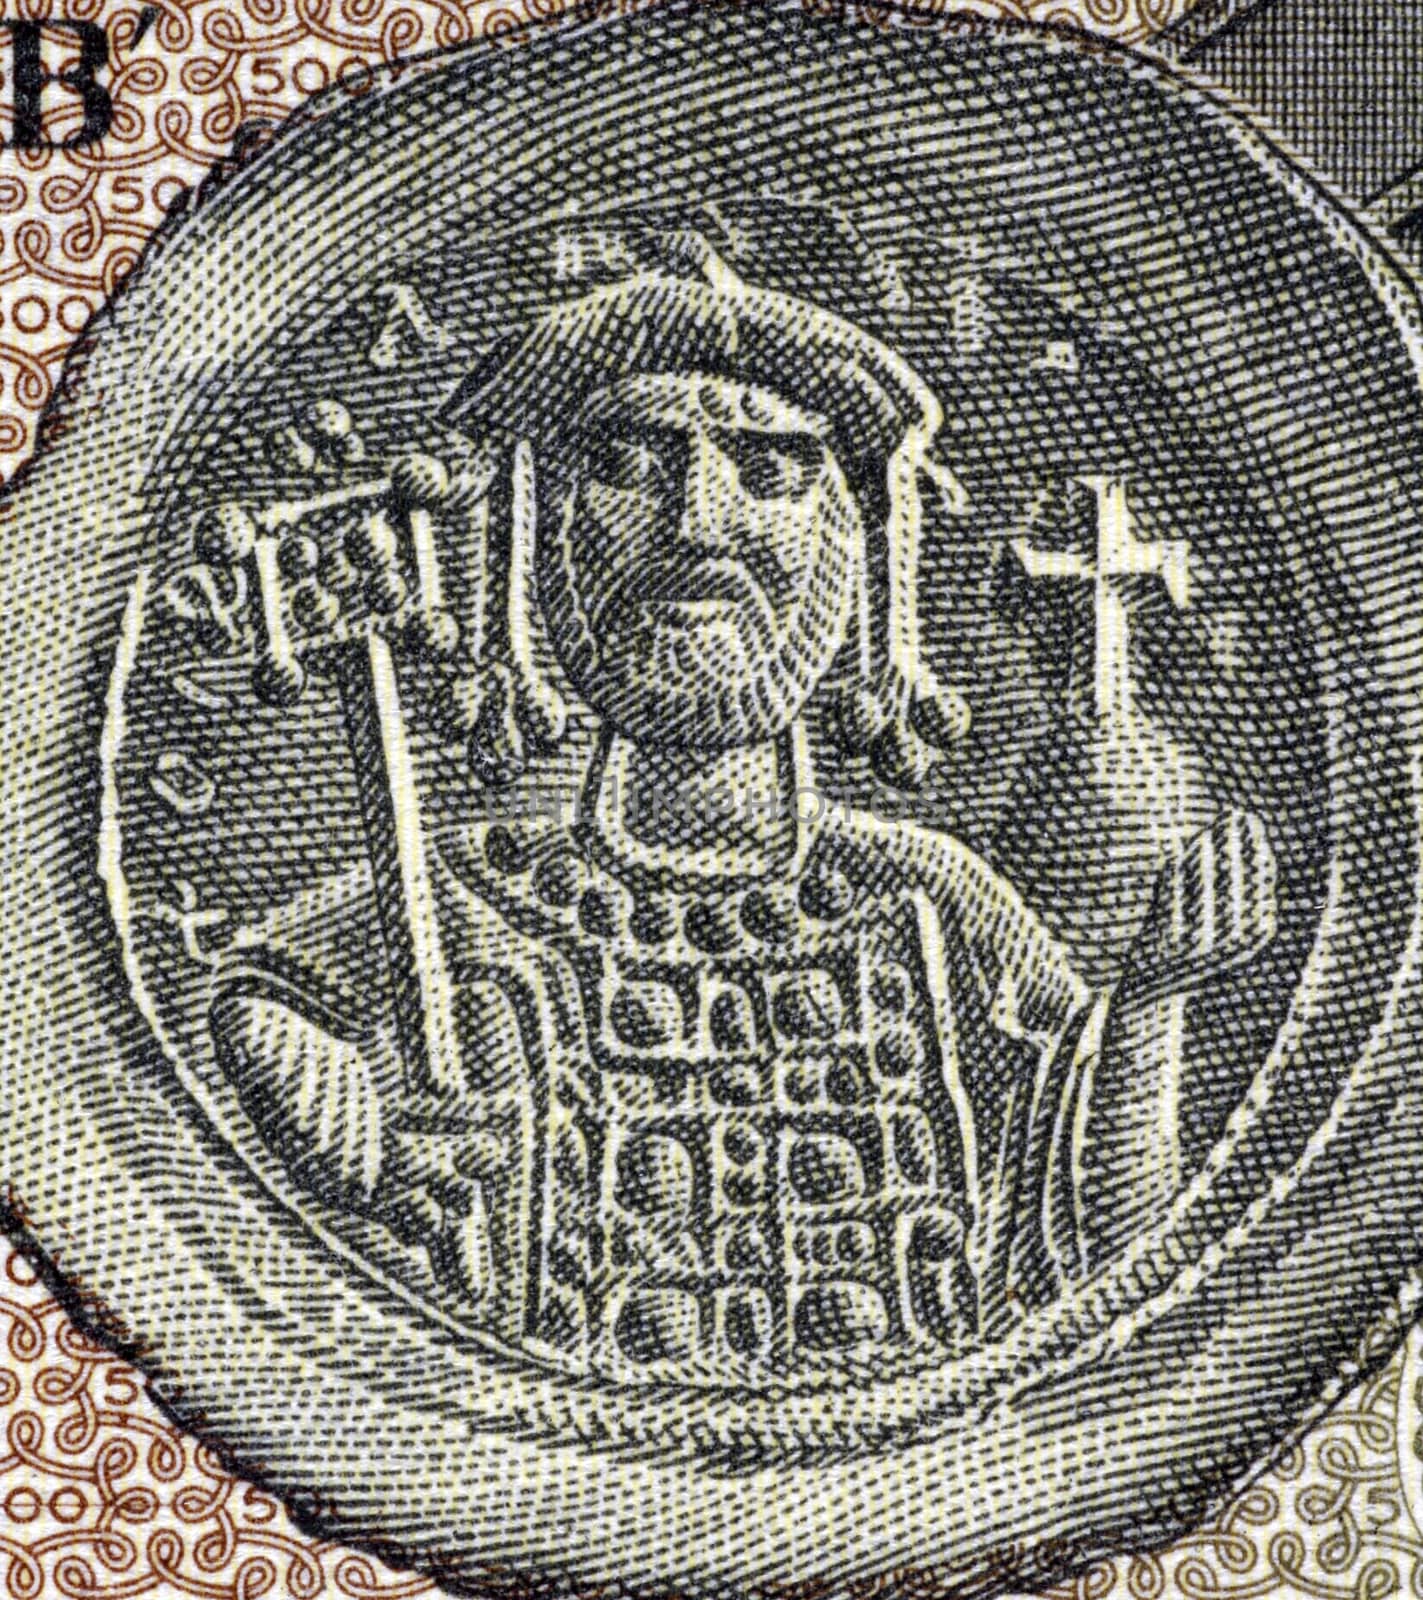 Justinian I by Georgios